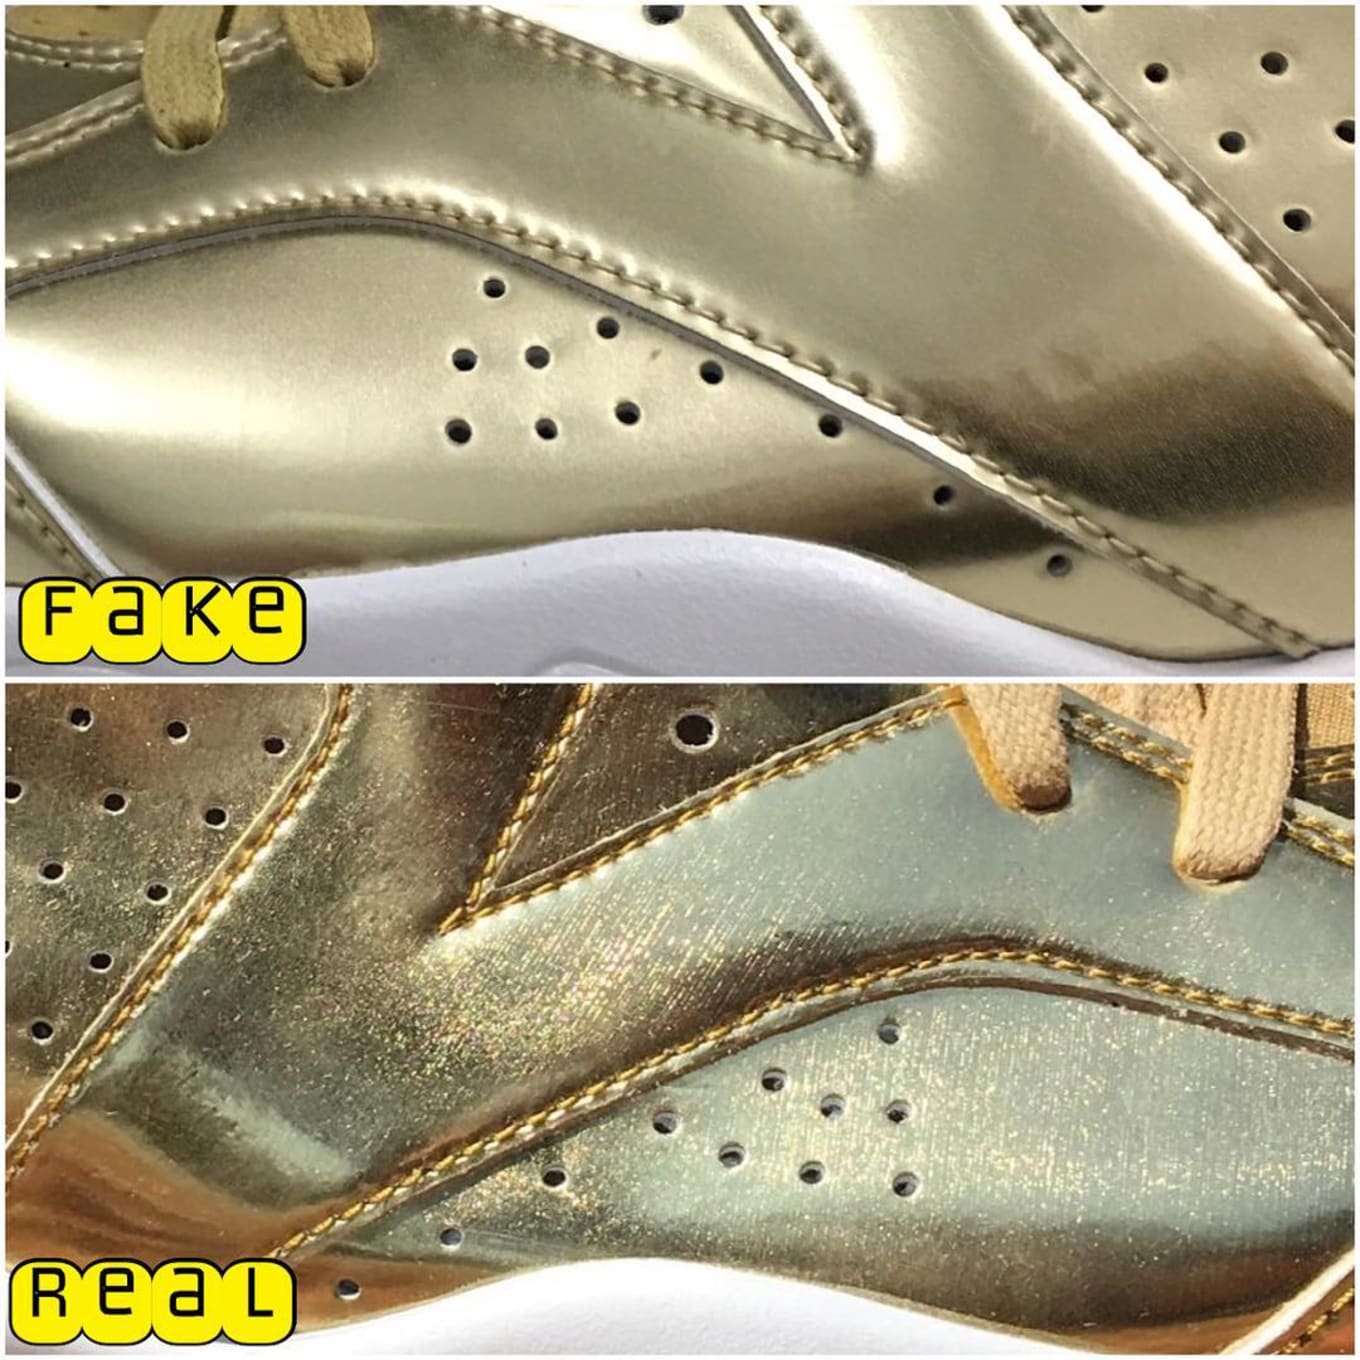 Exceder Escarpado burlarse de Air Jordan 6 Pinnacle Metallic Gold Legit Check | Sole Collector